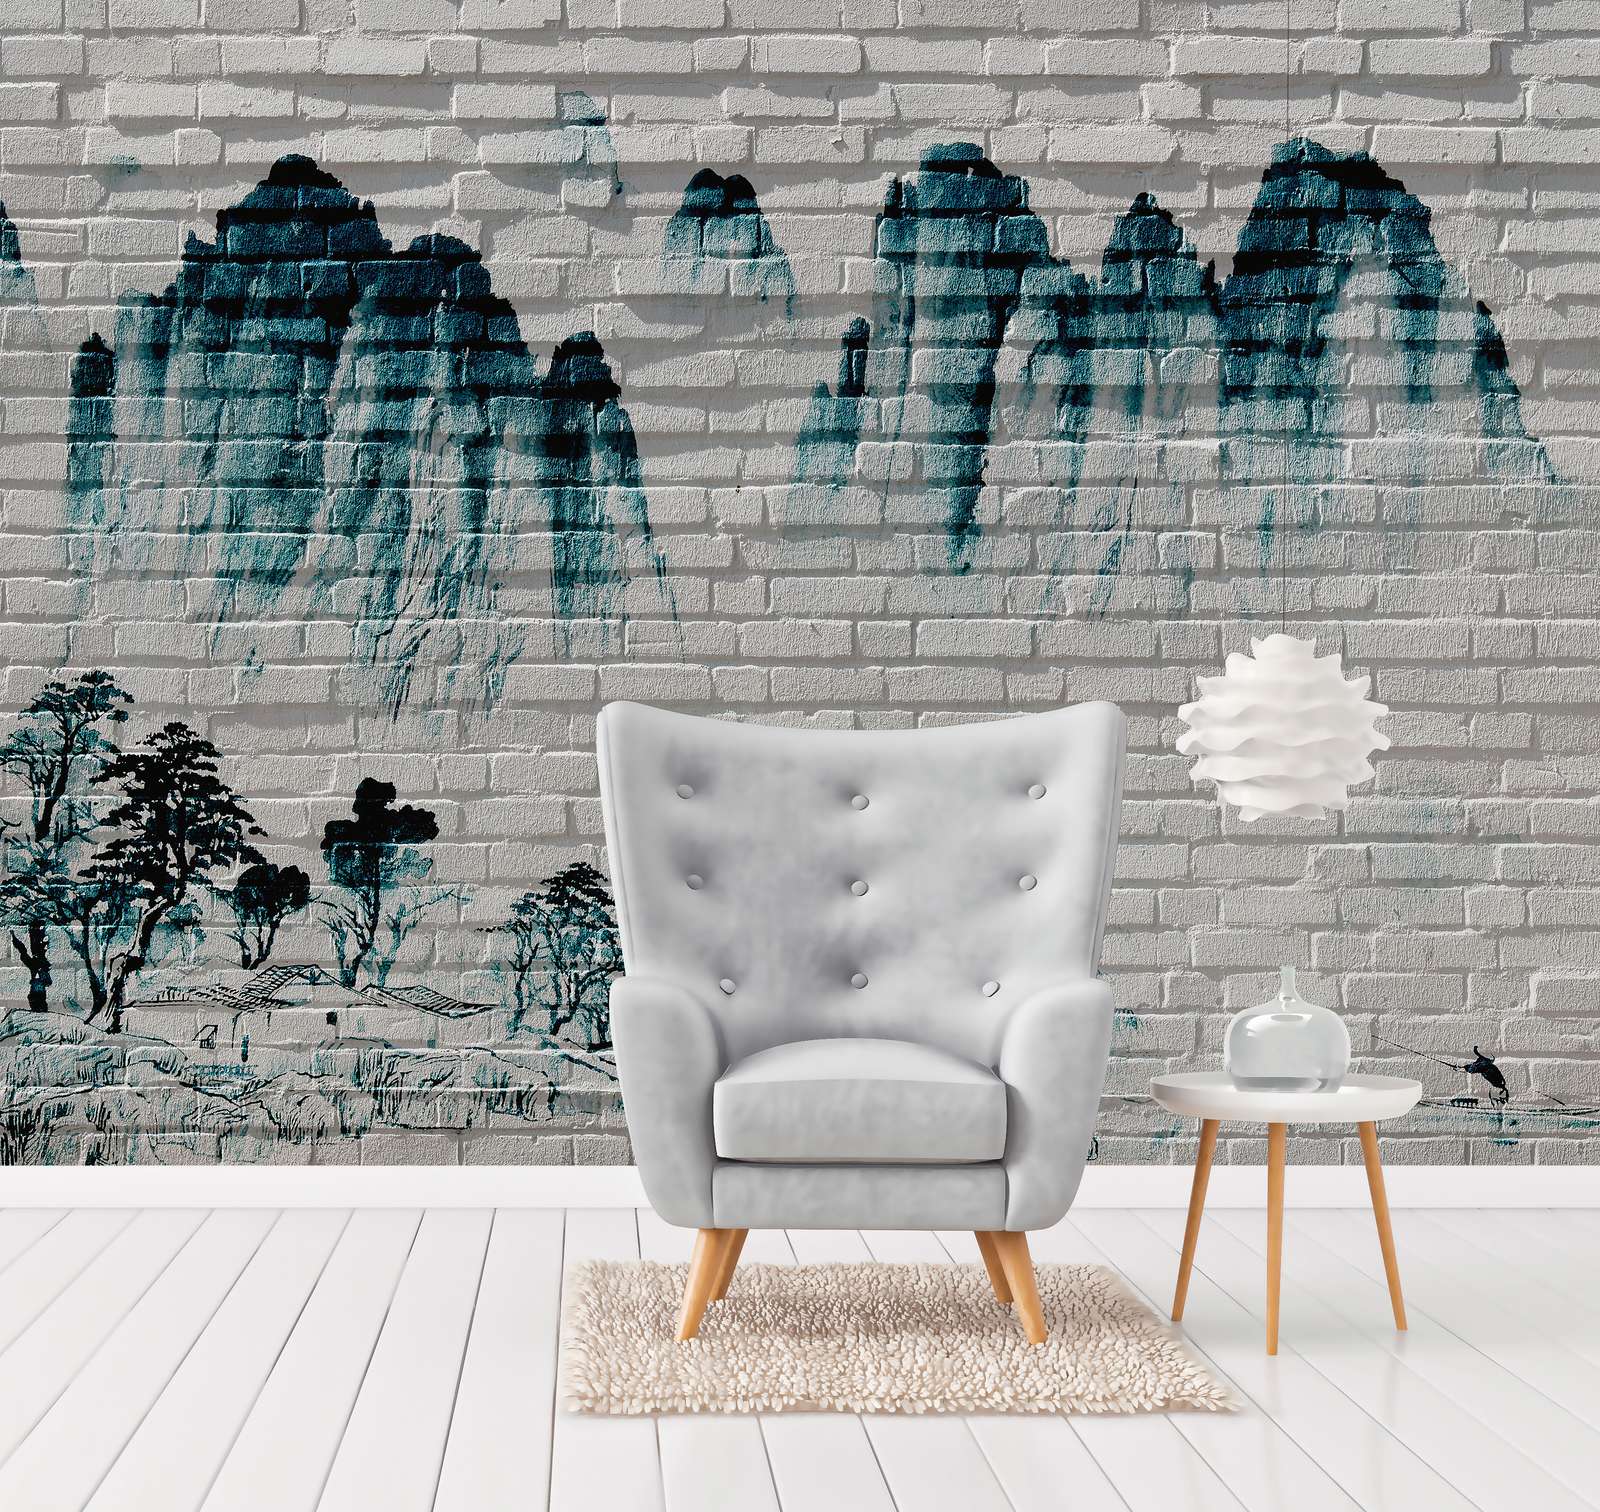             Digital behang Bergen op Bakstenen Muur - Blauw, Wit
        